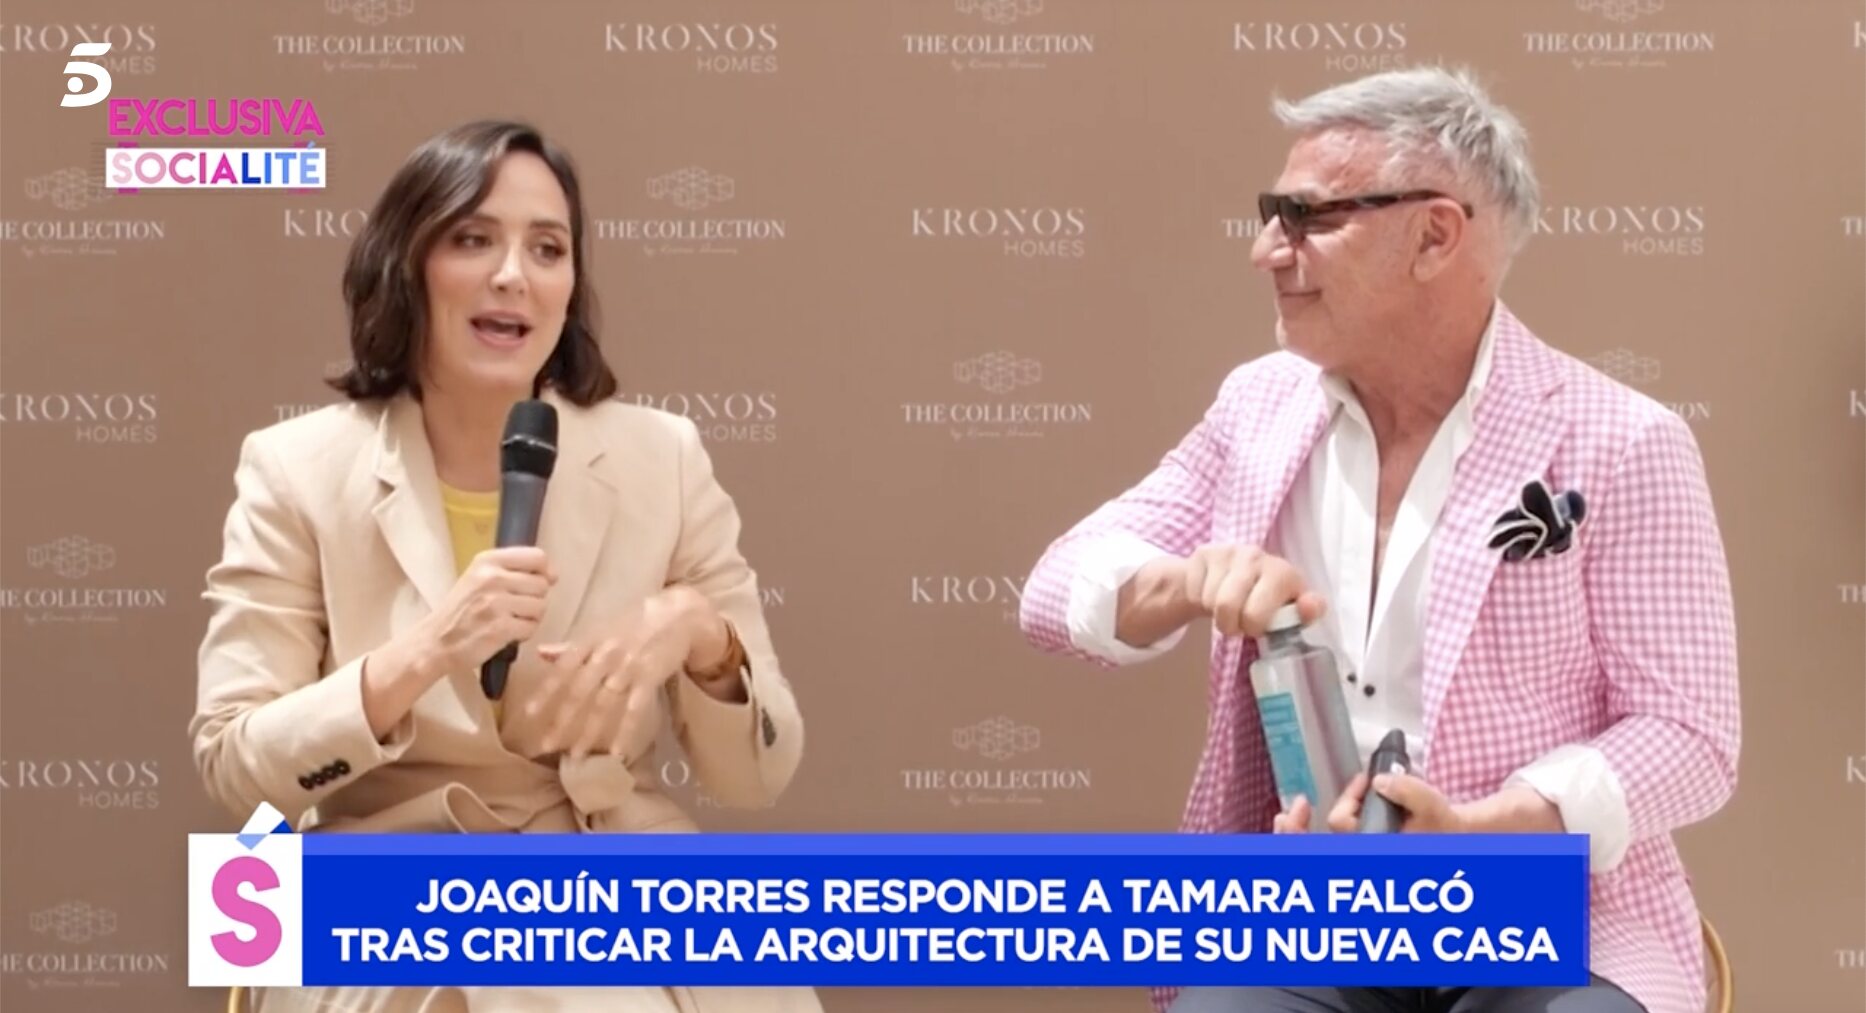 Tamara Falcó tenía una opinión muy diferente cuando trabajó con la promotora | Foto: Telecinco.es